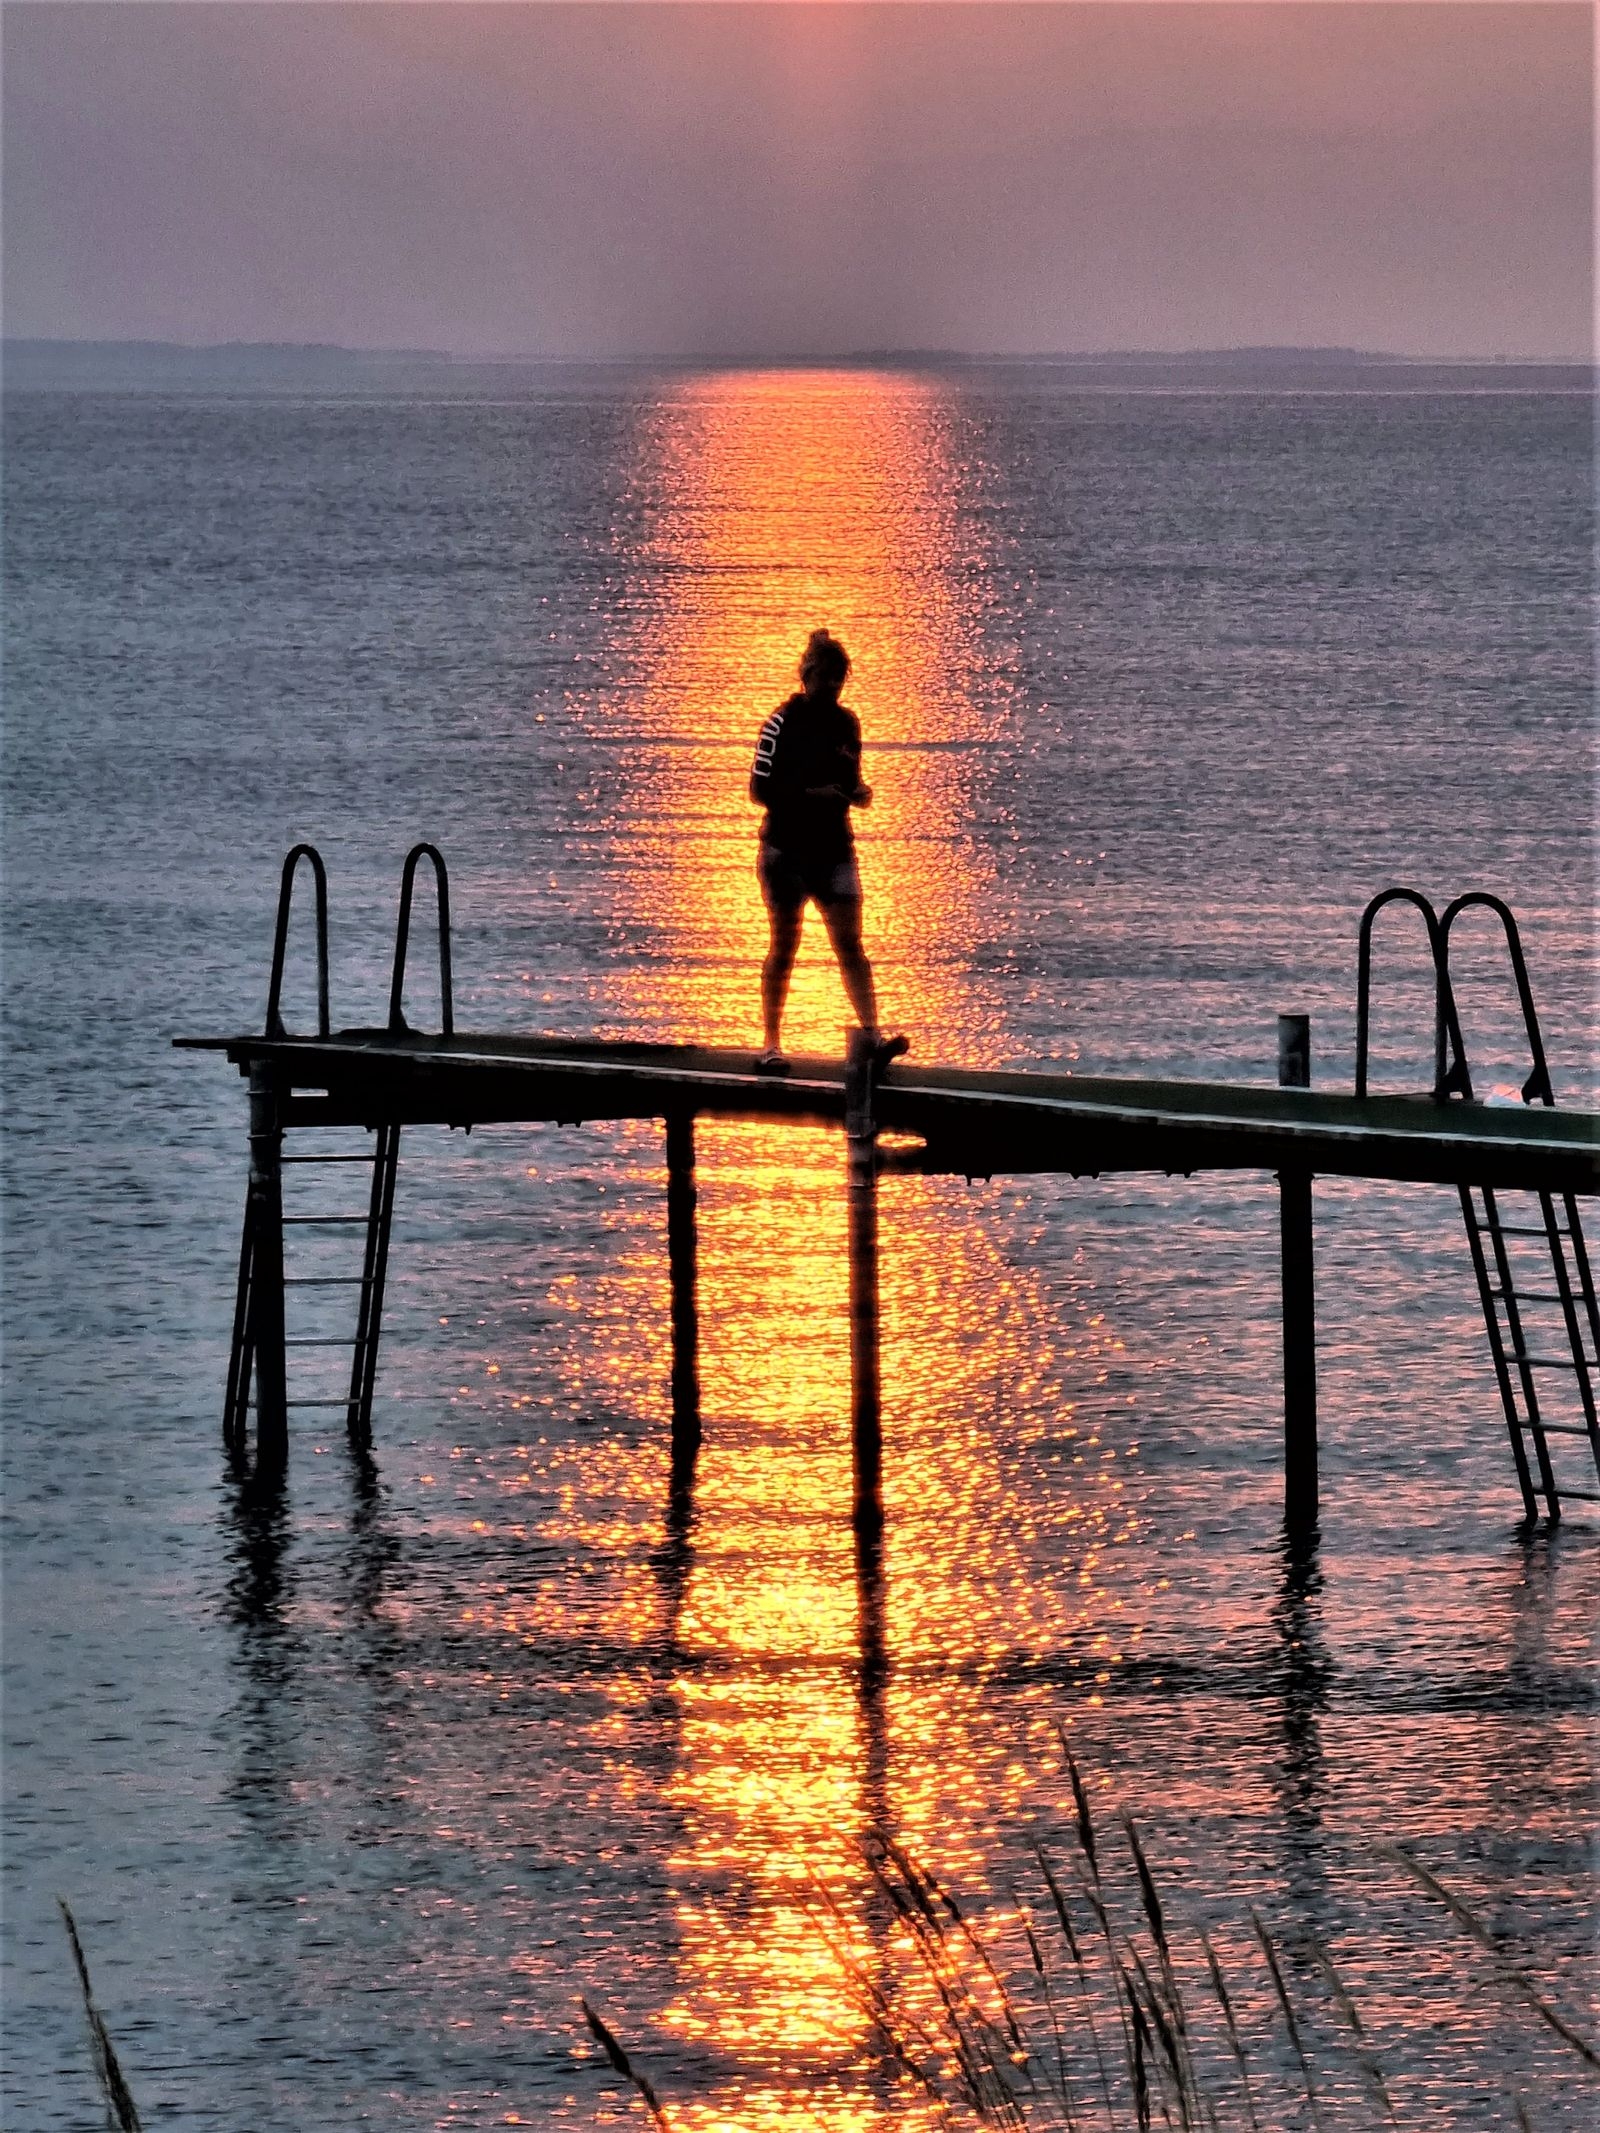 ”Magisk solnedgång över Ölands hav”, hälsar Anne-Sofie Holmberg, @tindrasofie, via Instagram.